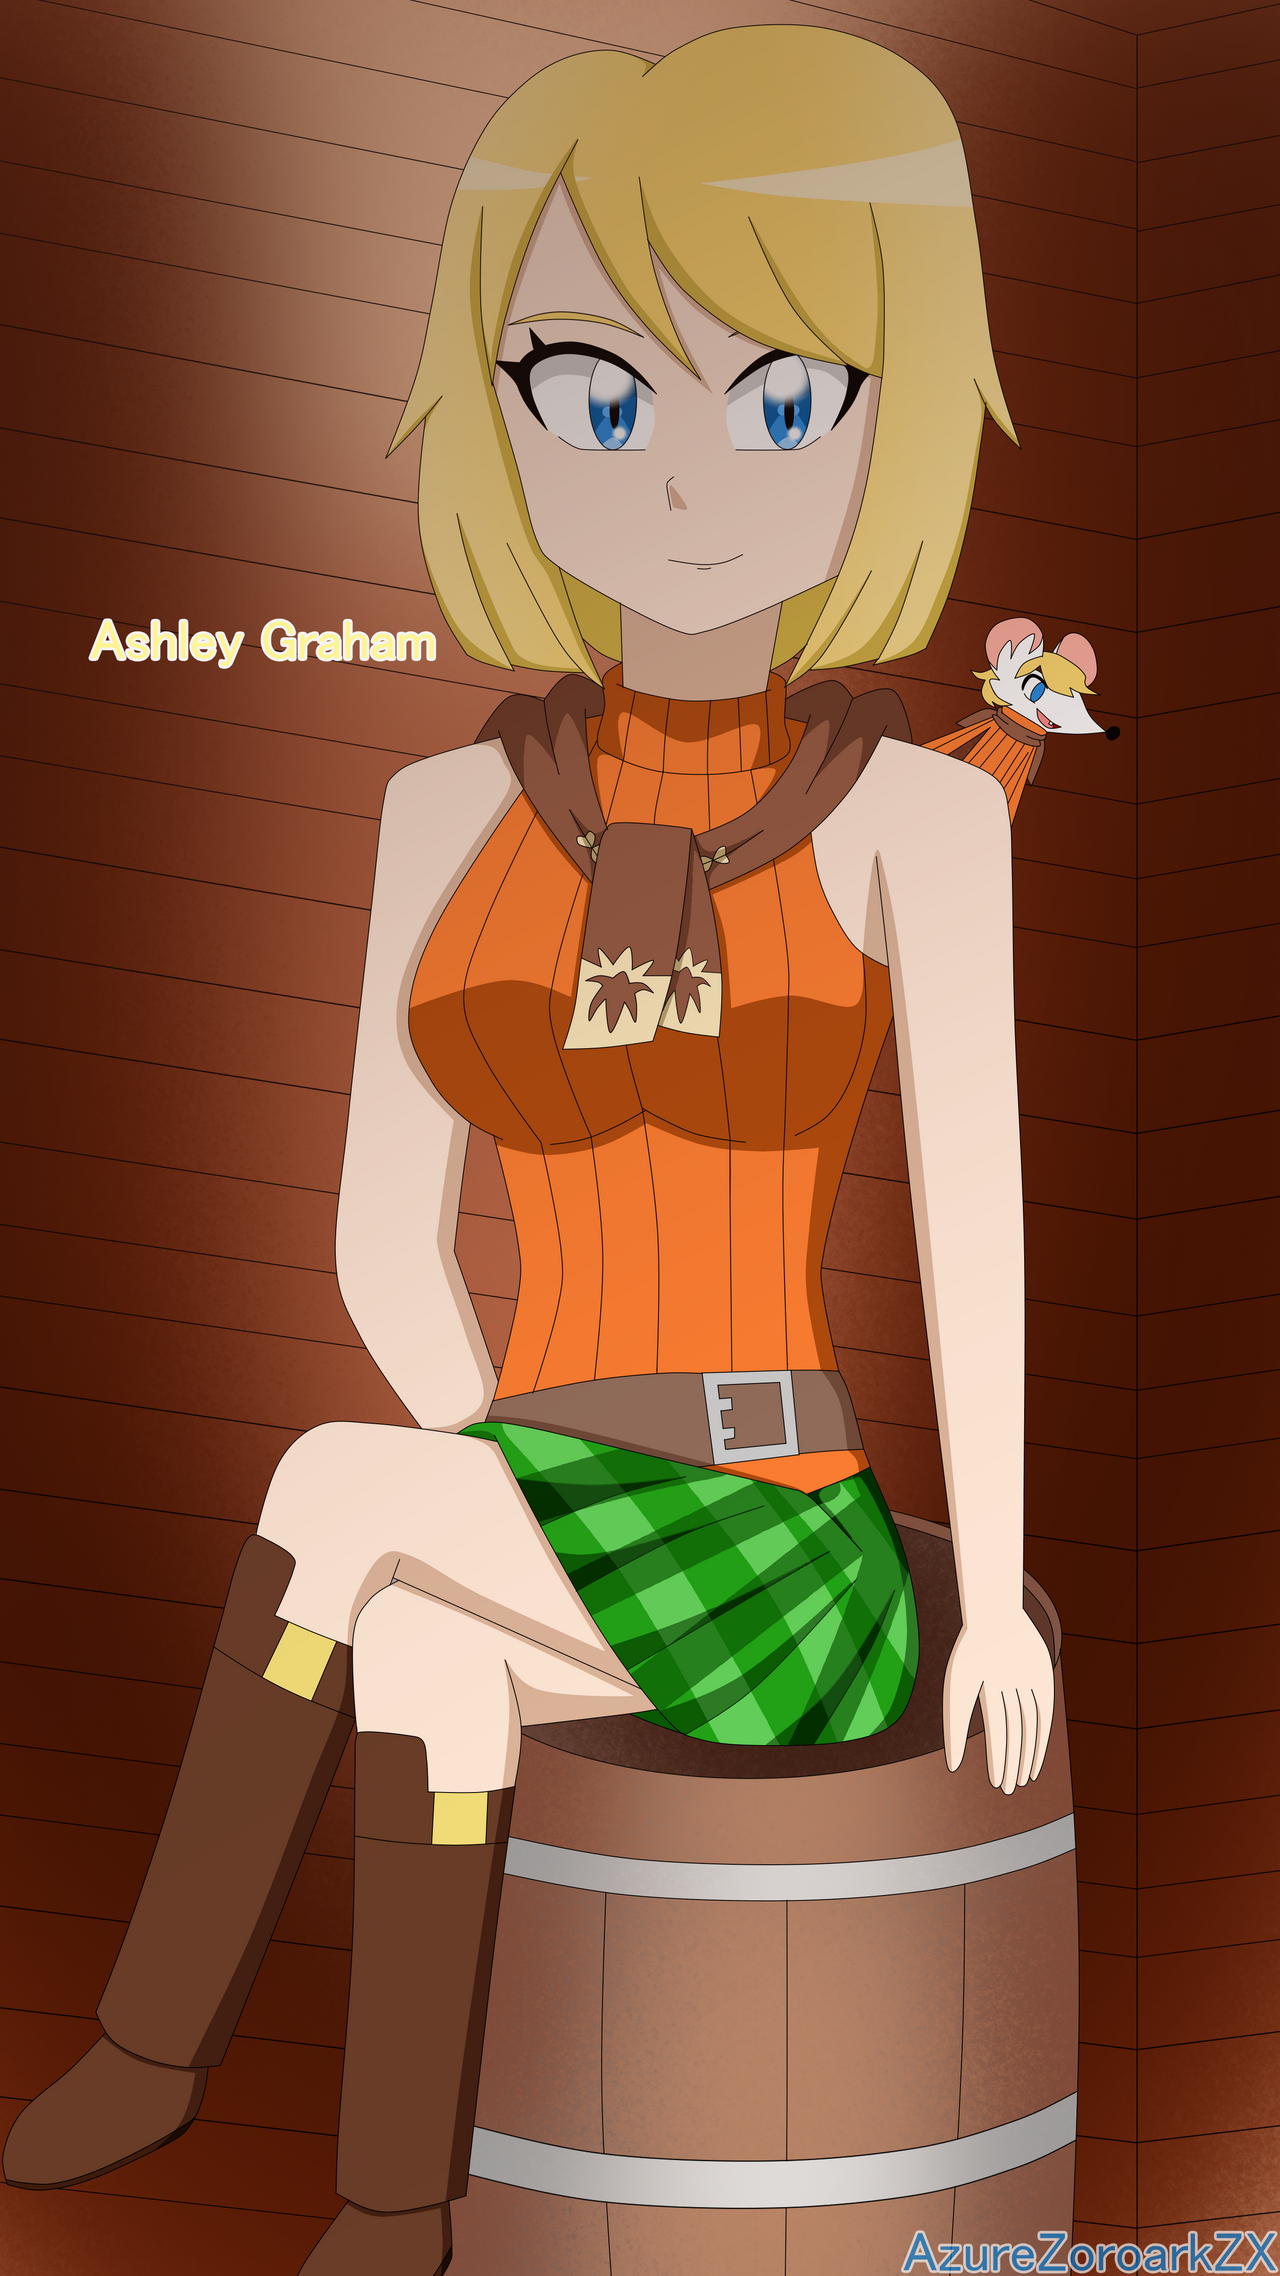 My Fanart of Ashley Graham from Resident Evil 4 Remake : r/residentevil